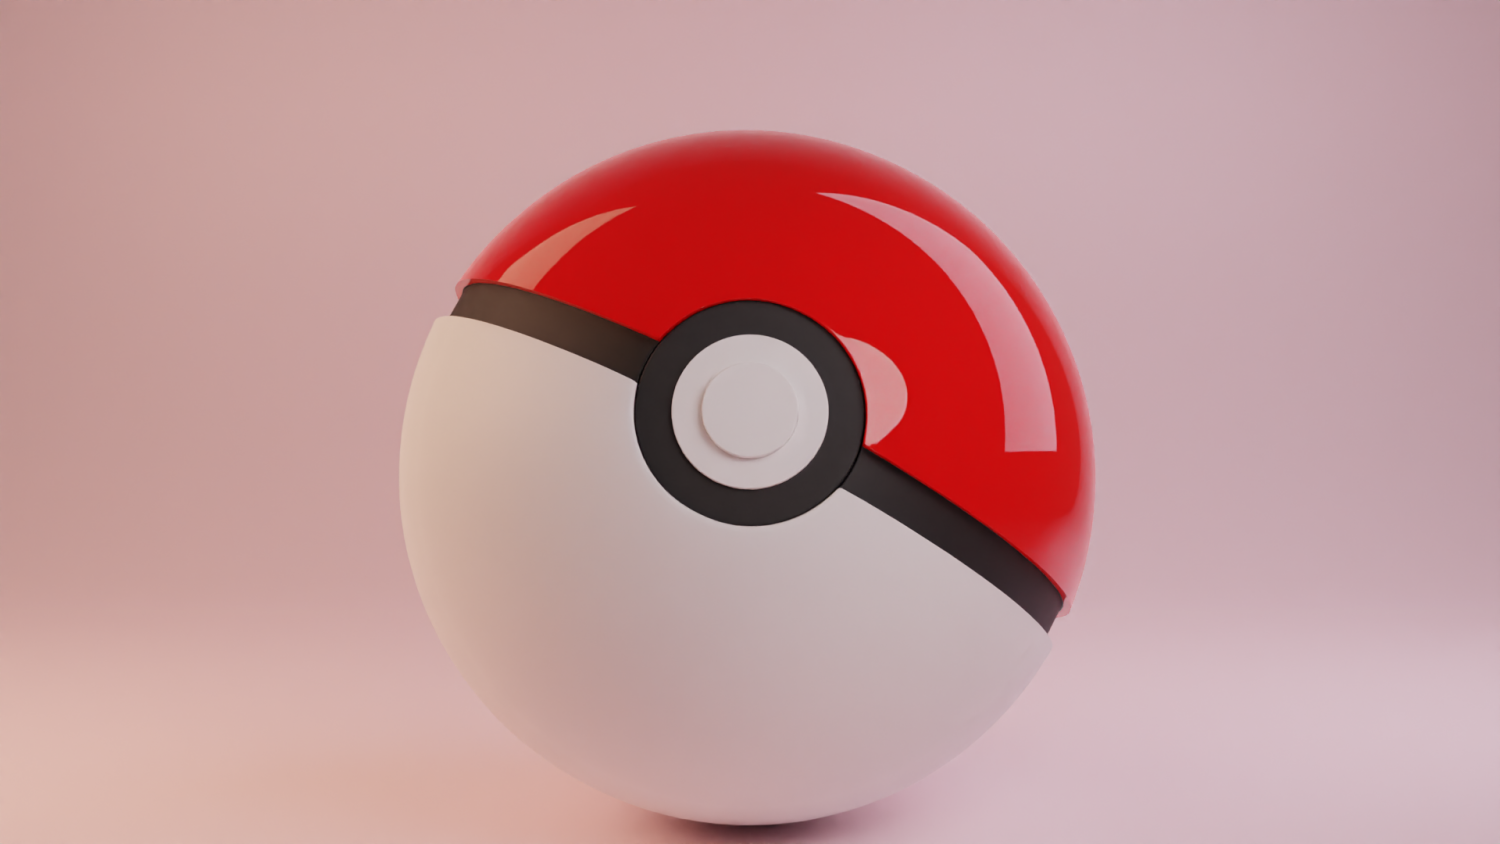 Ball, game, gaming, pokeball, pokemon icon - Free download